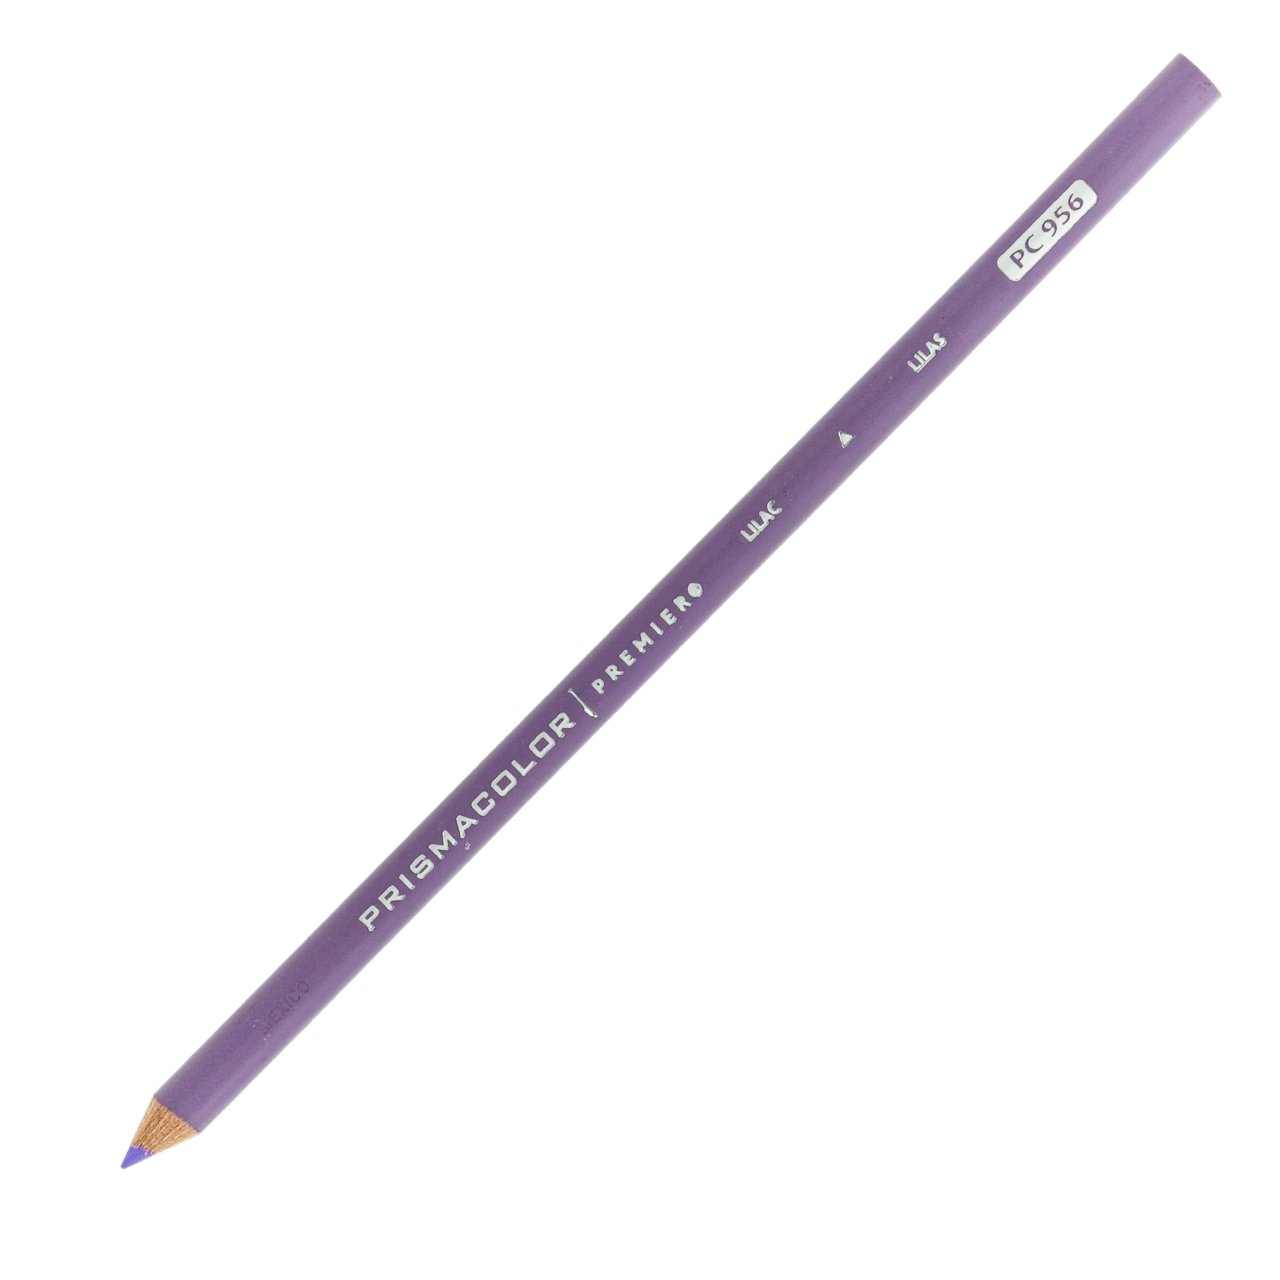 Prismacolor Premier Colored Pencil - Lilac 956 - merriartist.com